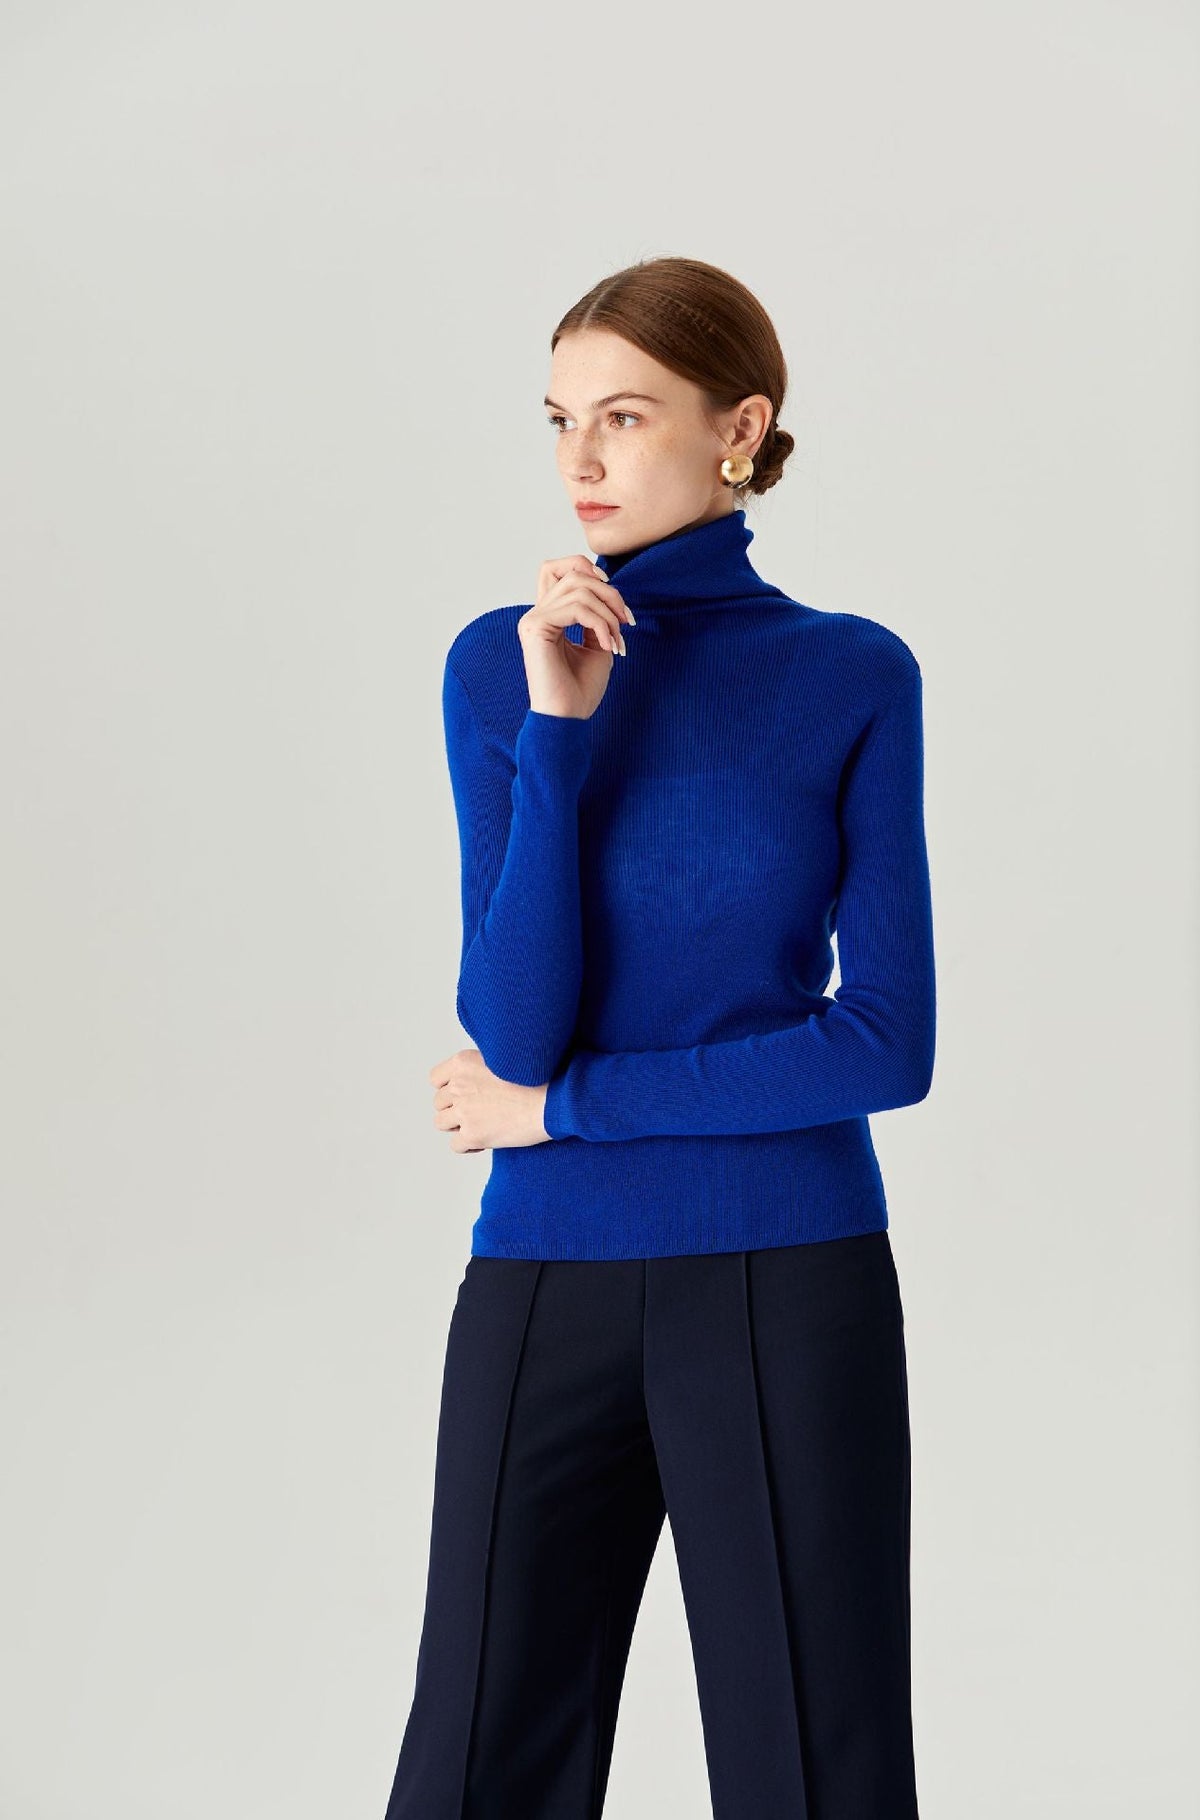 Lillian 30% Merino Wool Turtleneck Sweater - Whisper Mint